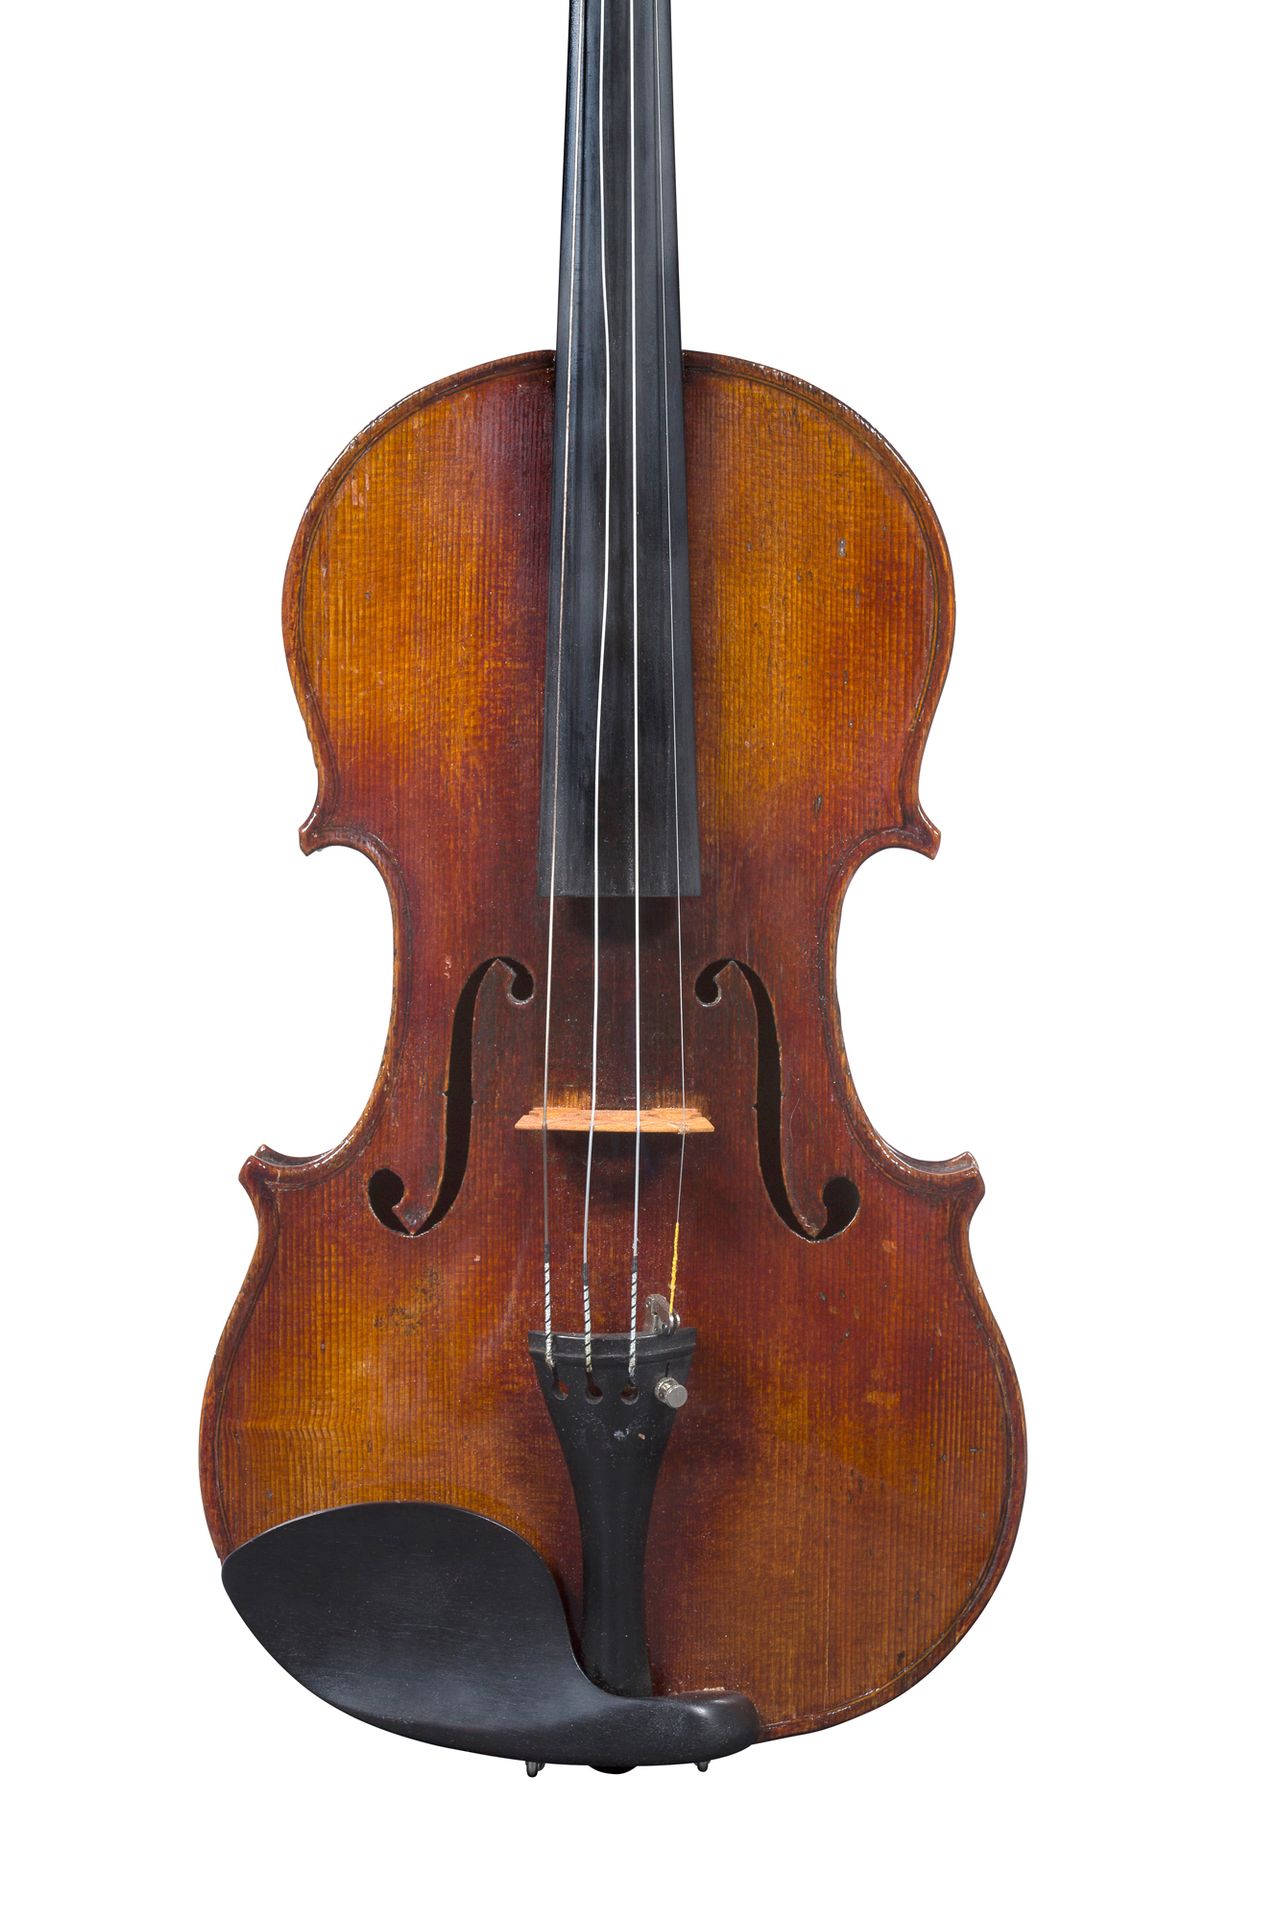 Null Geige, hergestellt in Mirecourt um 1870-80.
Trägt das Etikett M Garnier in &hellip;